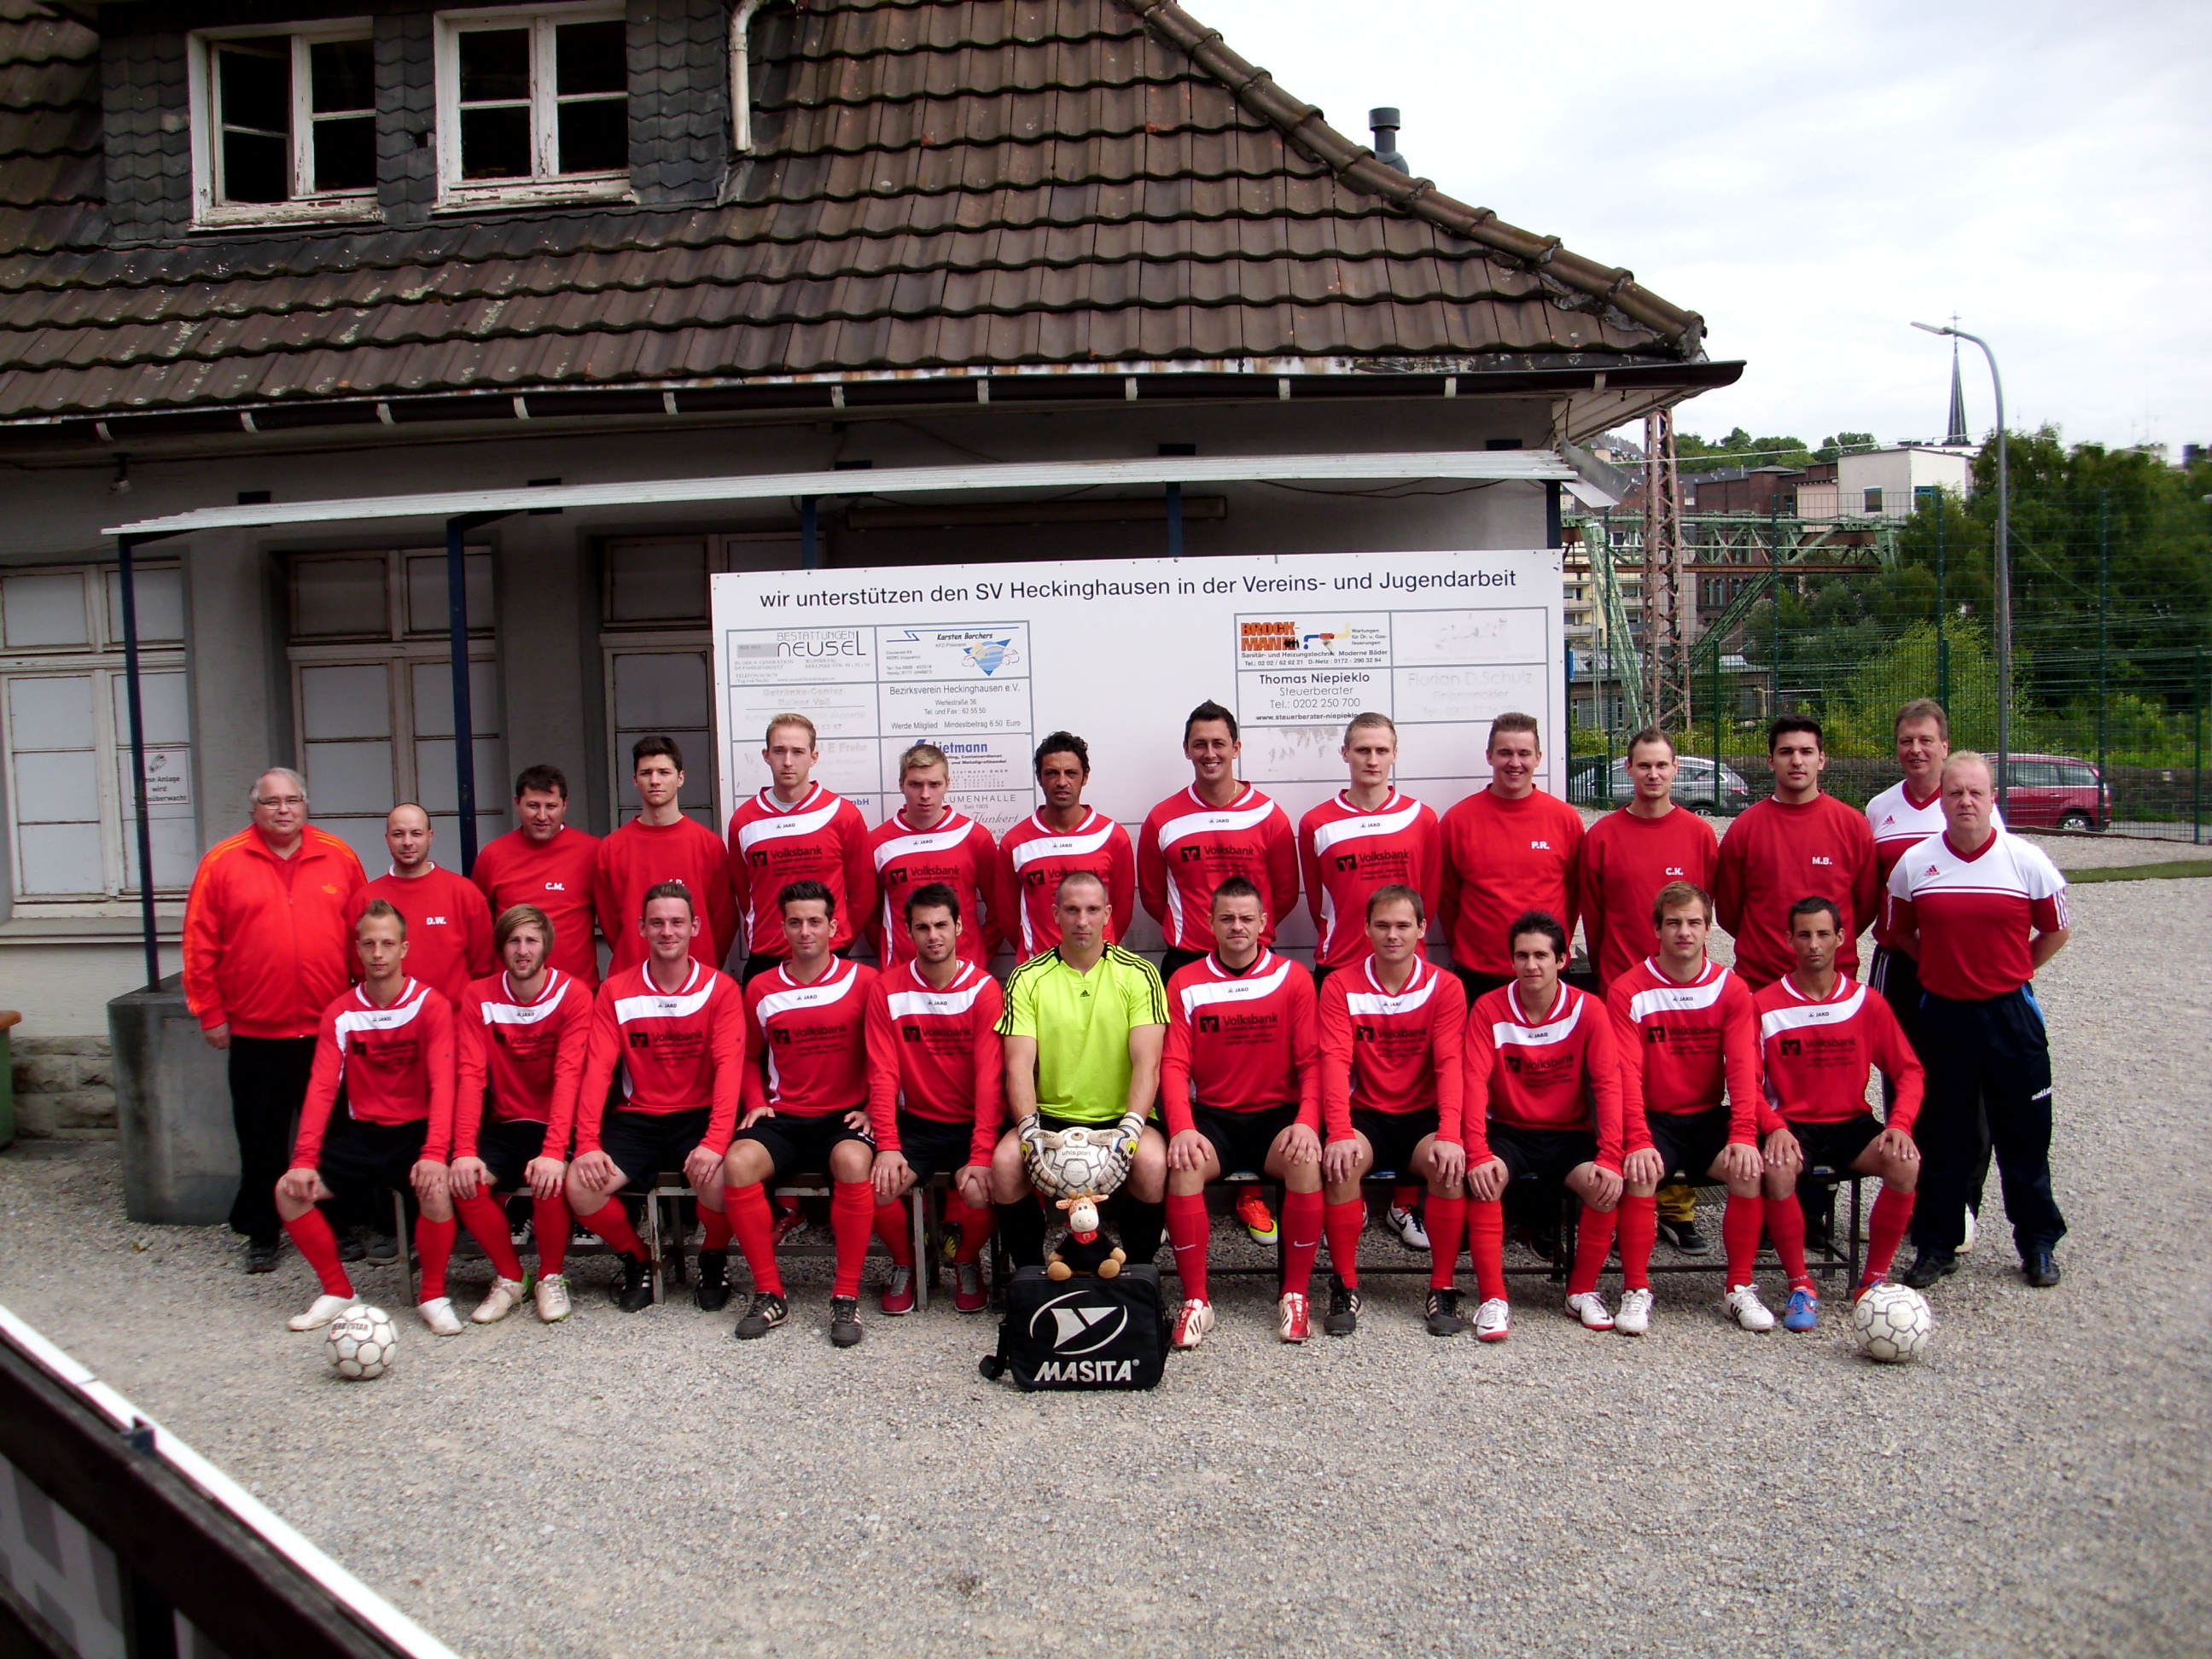 Mannschaftsfoto/Teamfoto von SV Heckinghausen